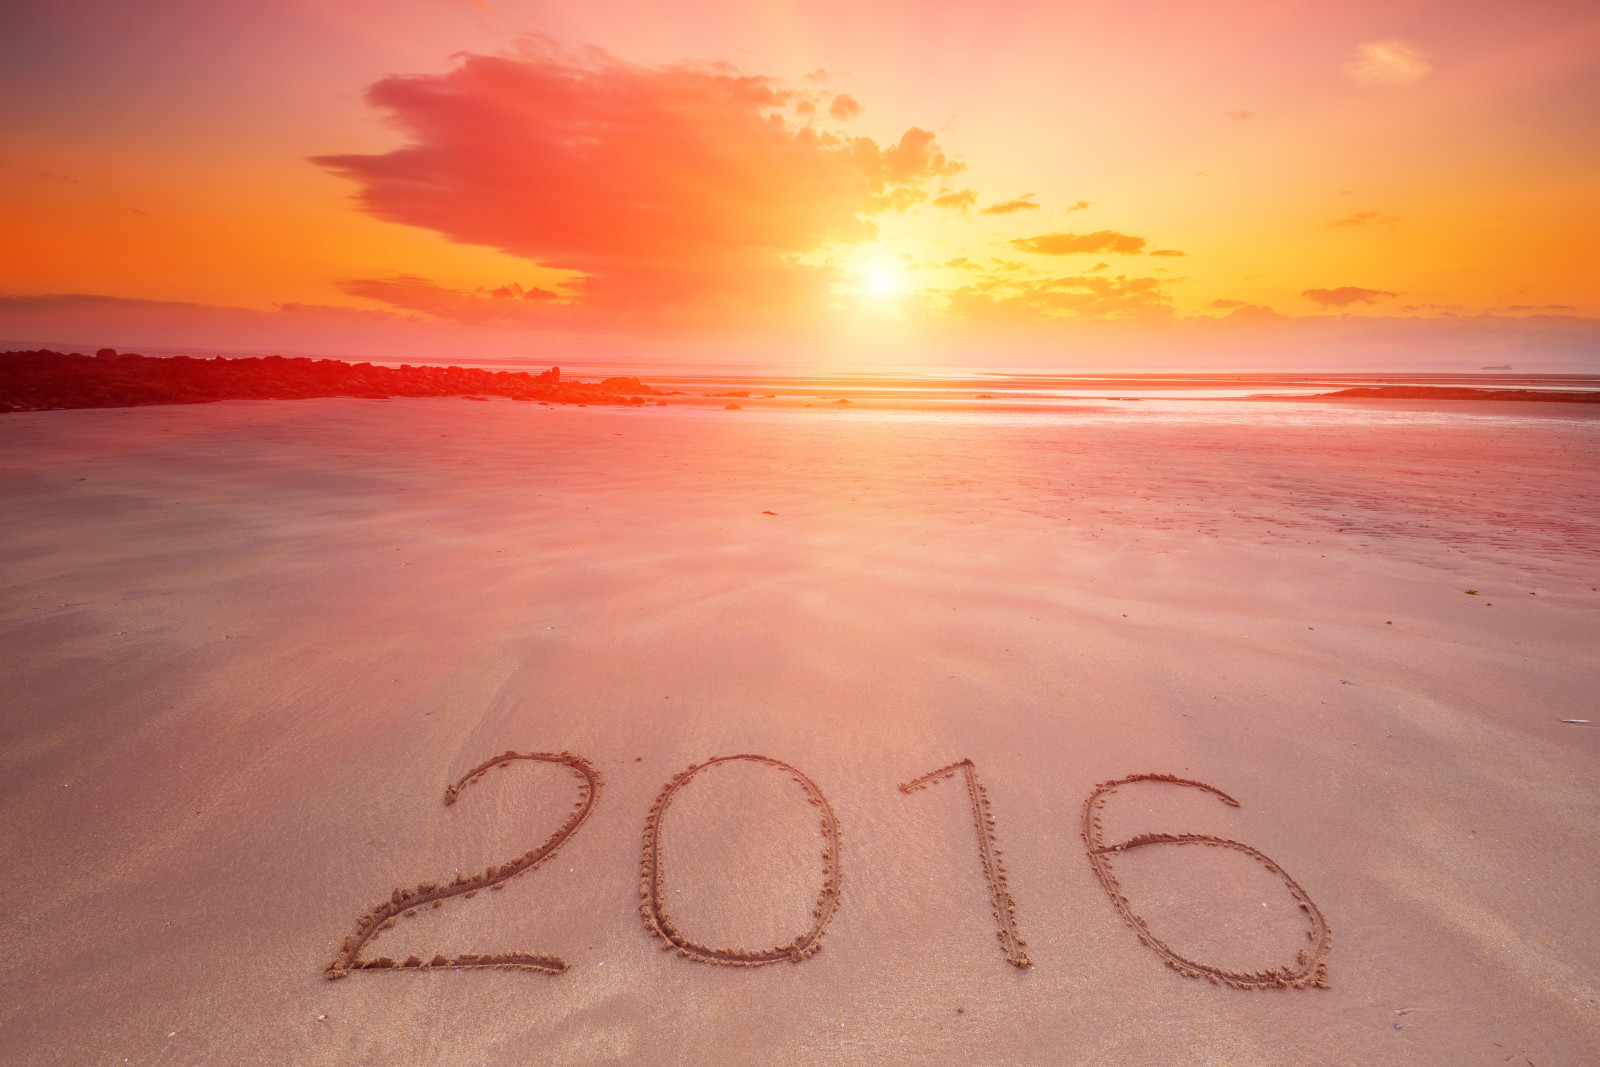 ปีใหม่, พระอาทิตย์ตกดิน, ชายหาด, ทะเล, มีความสุข, ทราย, ตัวเลข, 2016